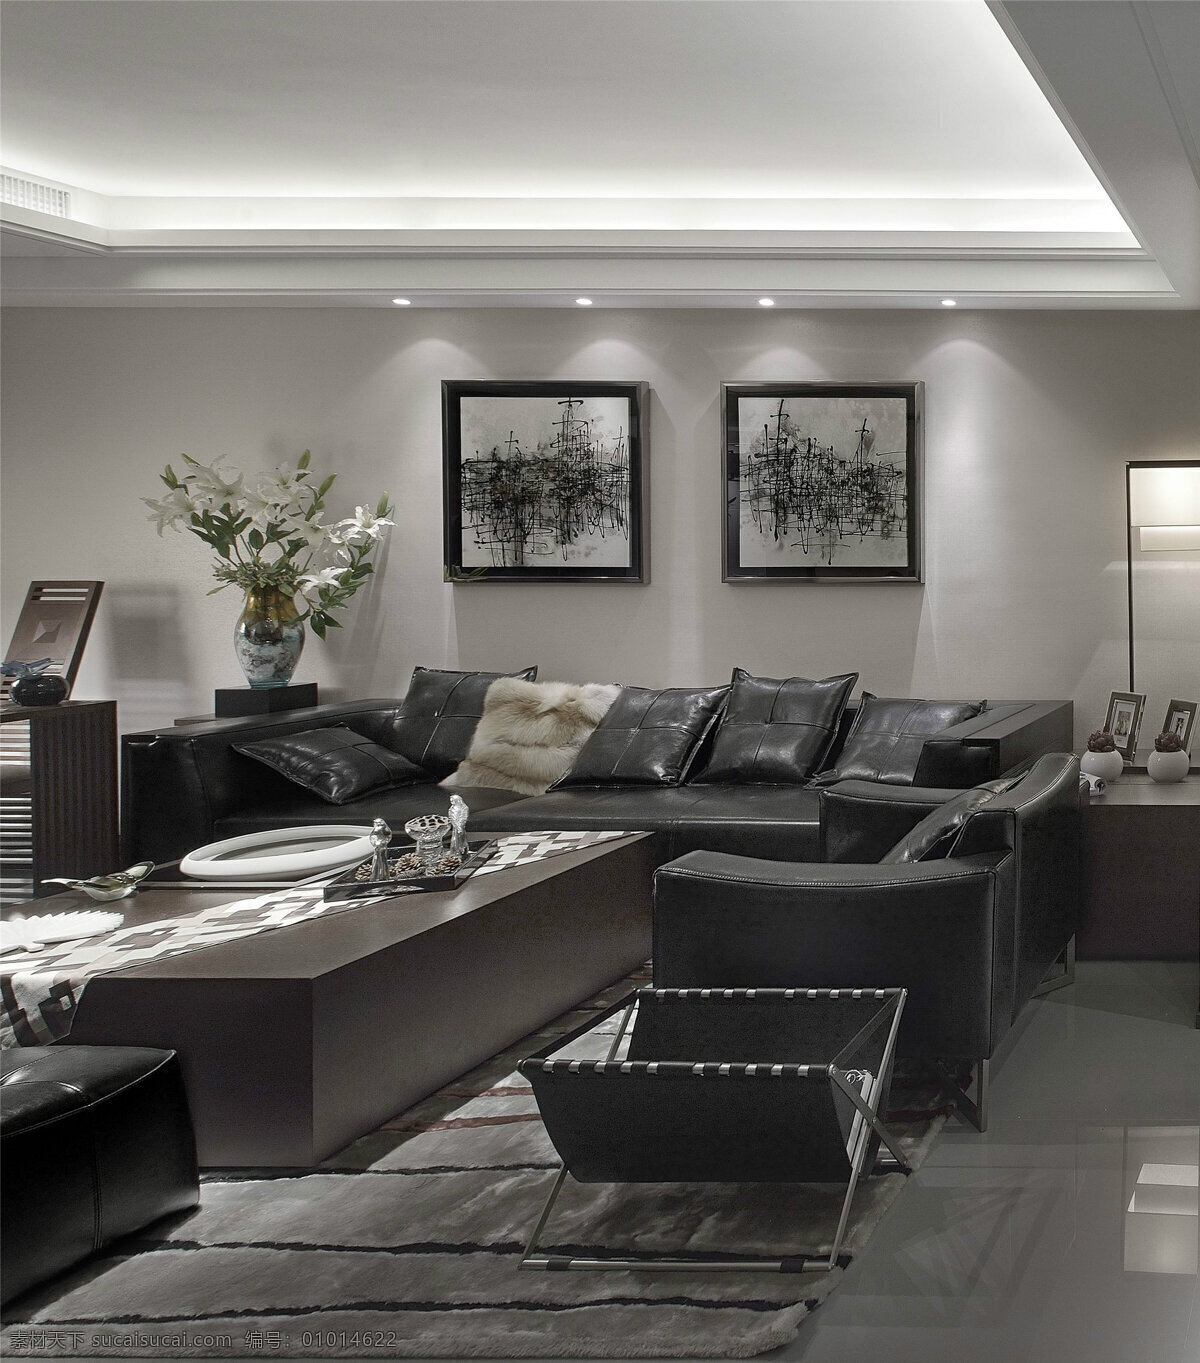 现代 时尚 客厅 黑色 家具 室内装修 效果图 客厅装修 黑色茶几 黑色沙发 深灰色地板